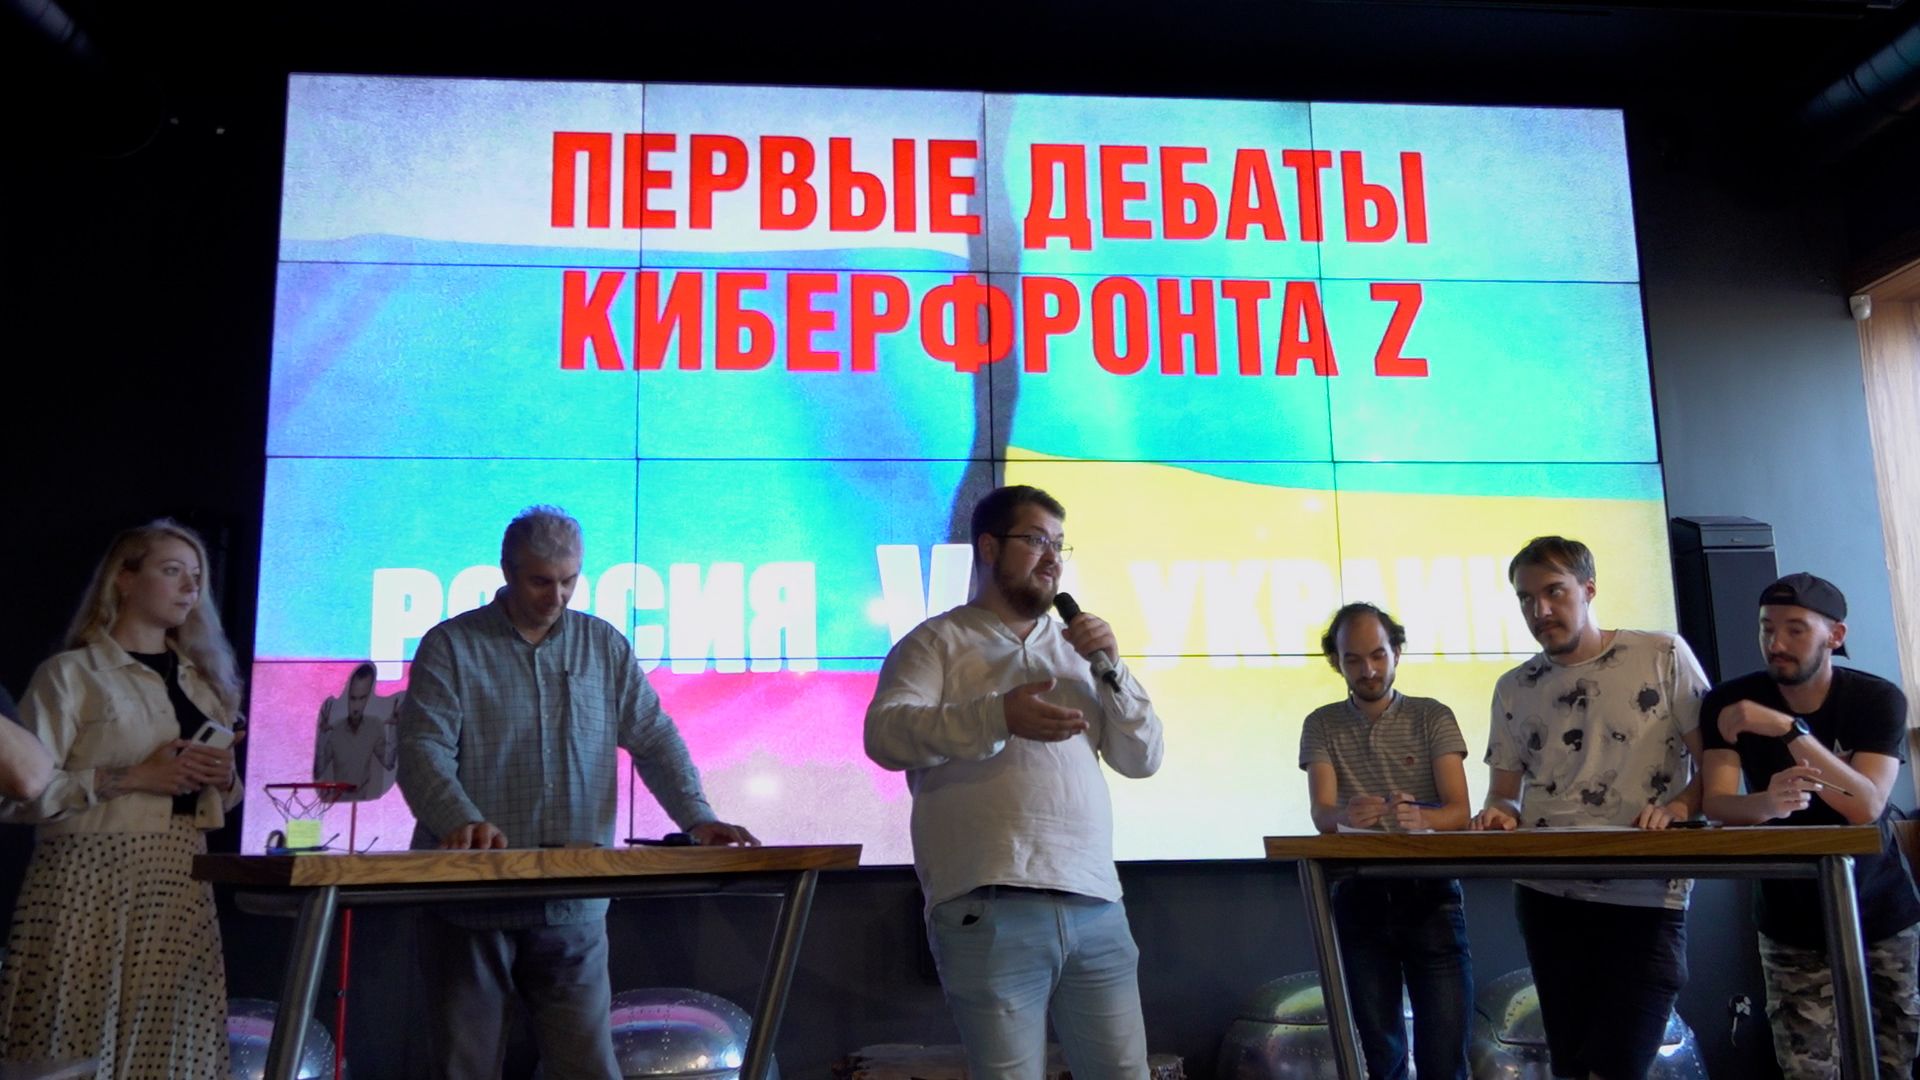 Первые дебаты в Штабе КИБЕР ФРОНТА Z Видео,Репортажи,ФАН-ТВ